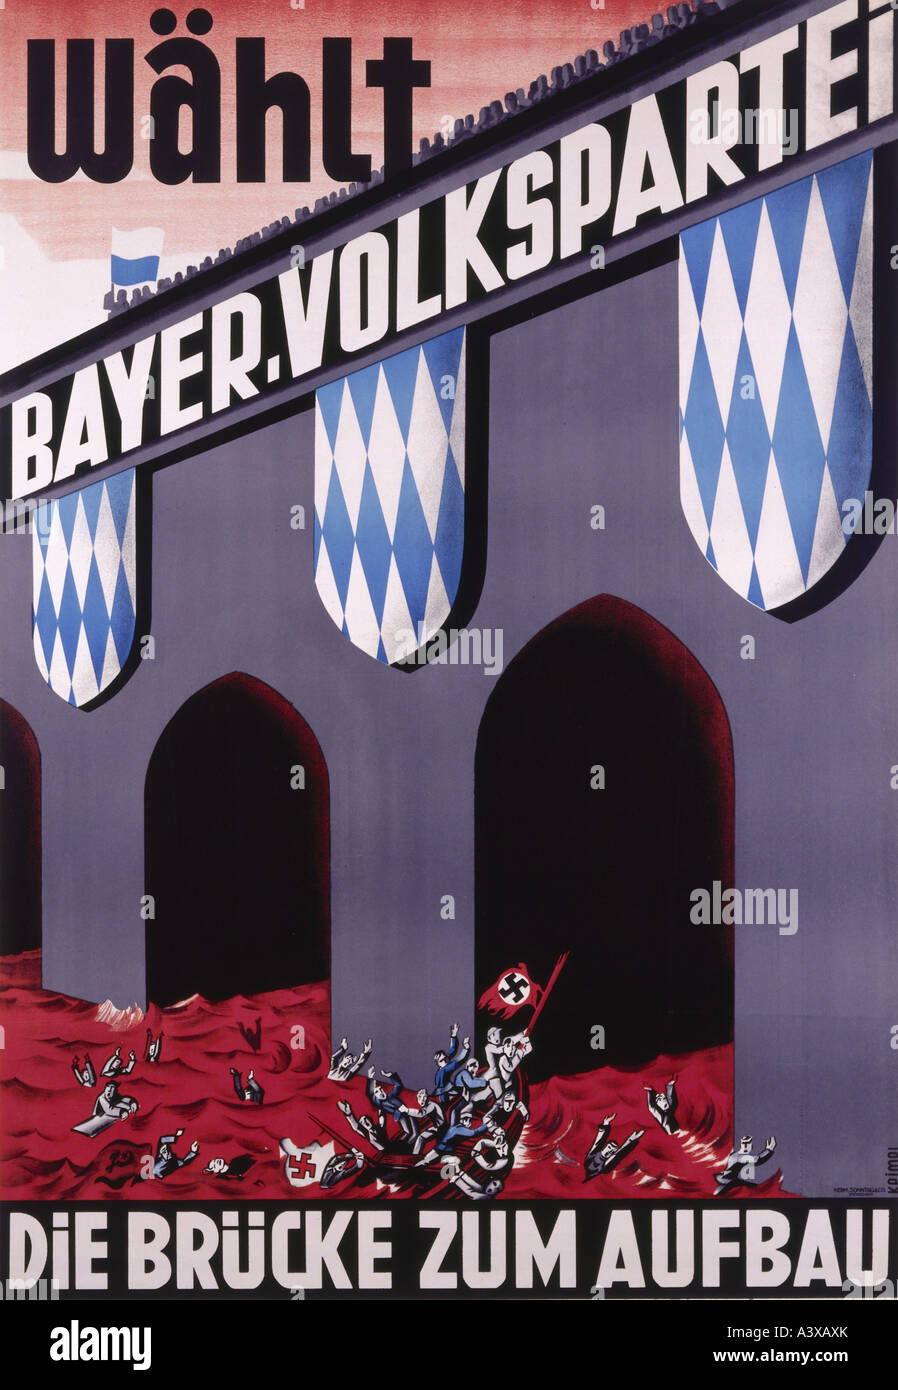 geography/travel, Germany, politics, 'Die Brücke zum Aufbau, Wählt Bayerische Volkspartei', Munich, circa 1930, poster, design by Hermann Keimel (1899 - 1948), , Stock Photo